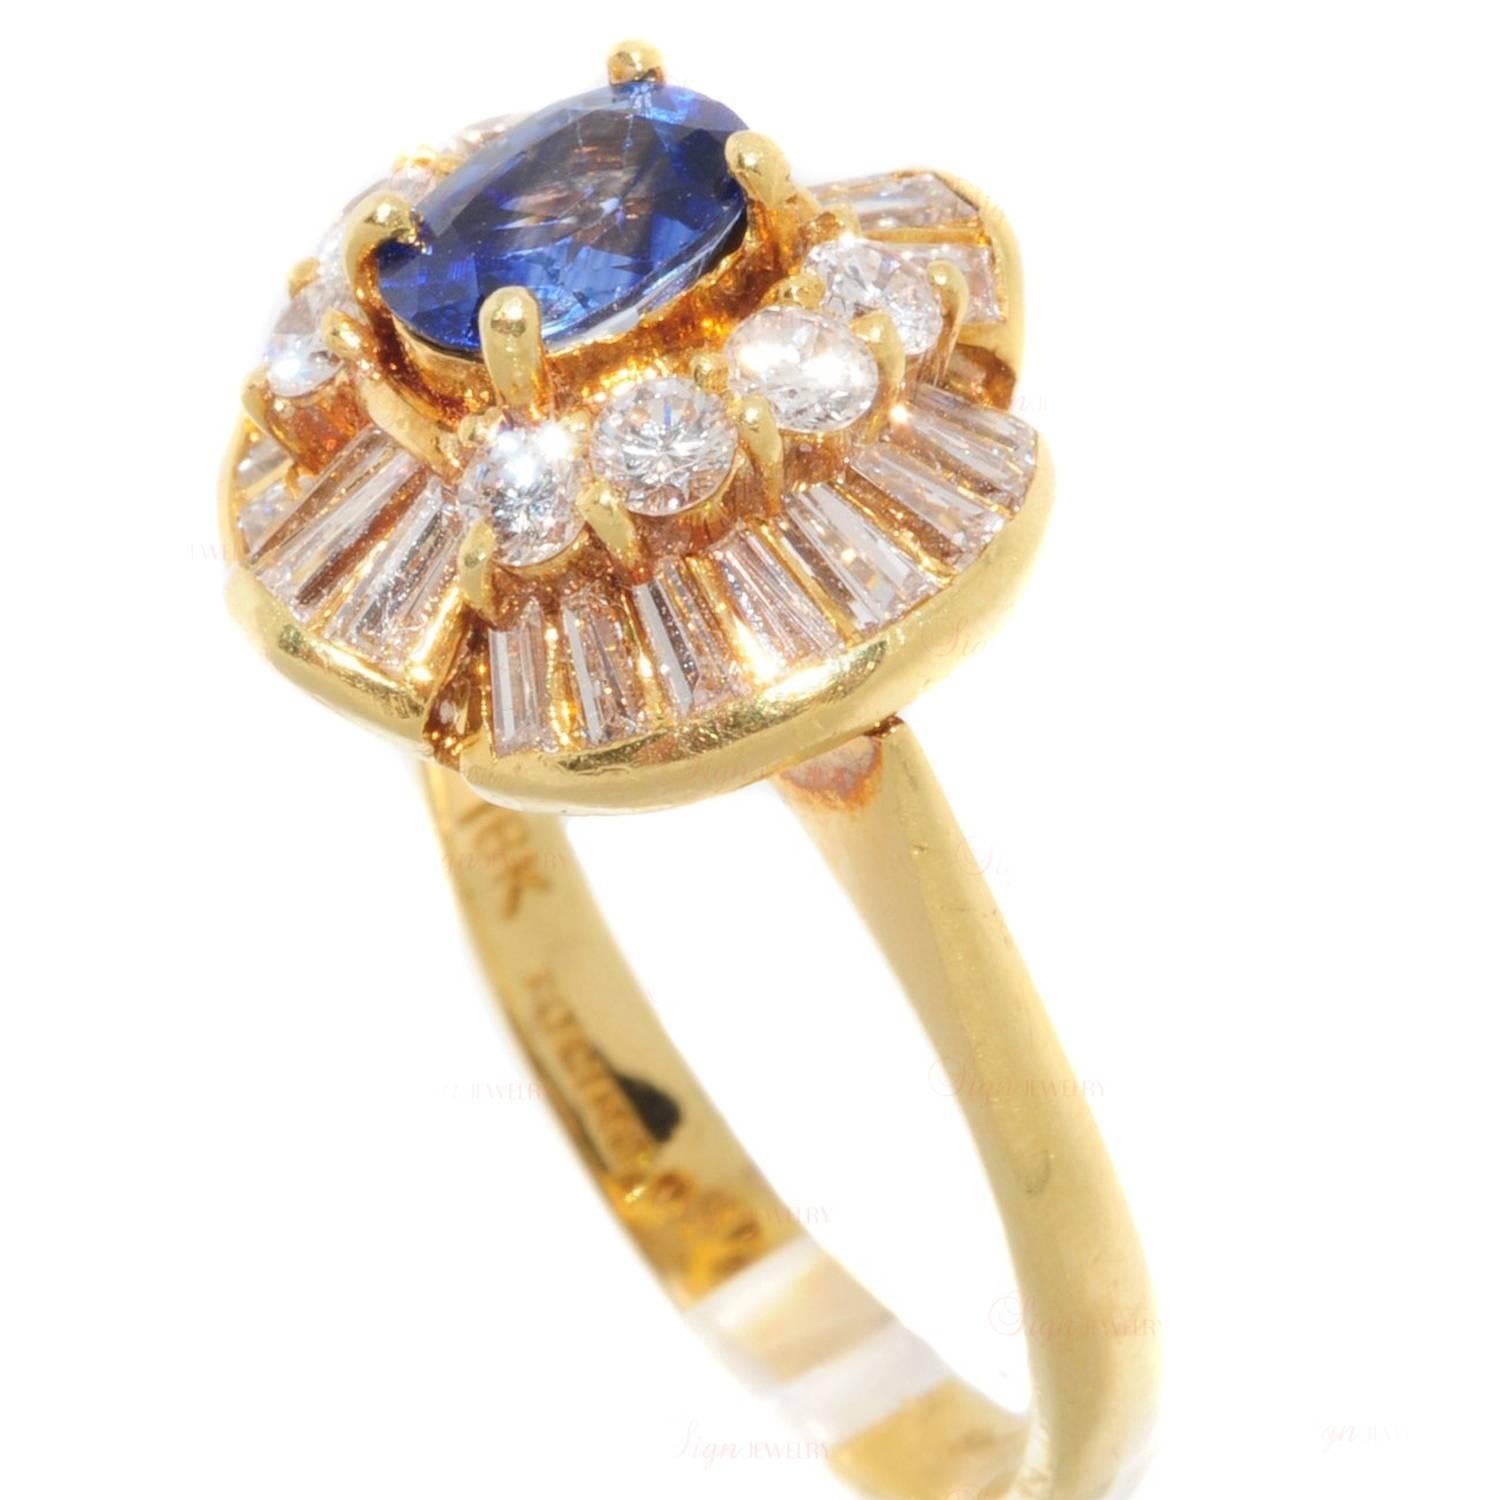 Dieser strahlende Cocktailring wurde in den 1980er Jahren hergestellt und besitzt eine wunderschöne Krone mit einem in Zacken gefassten natürlichen blauen Saphir, der von Diamanten umgeben ist, die alle in 18 Karat Gelbgold gefasst sind.